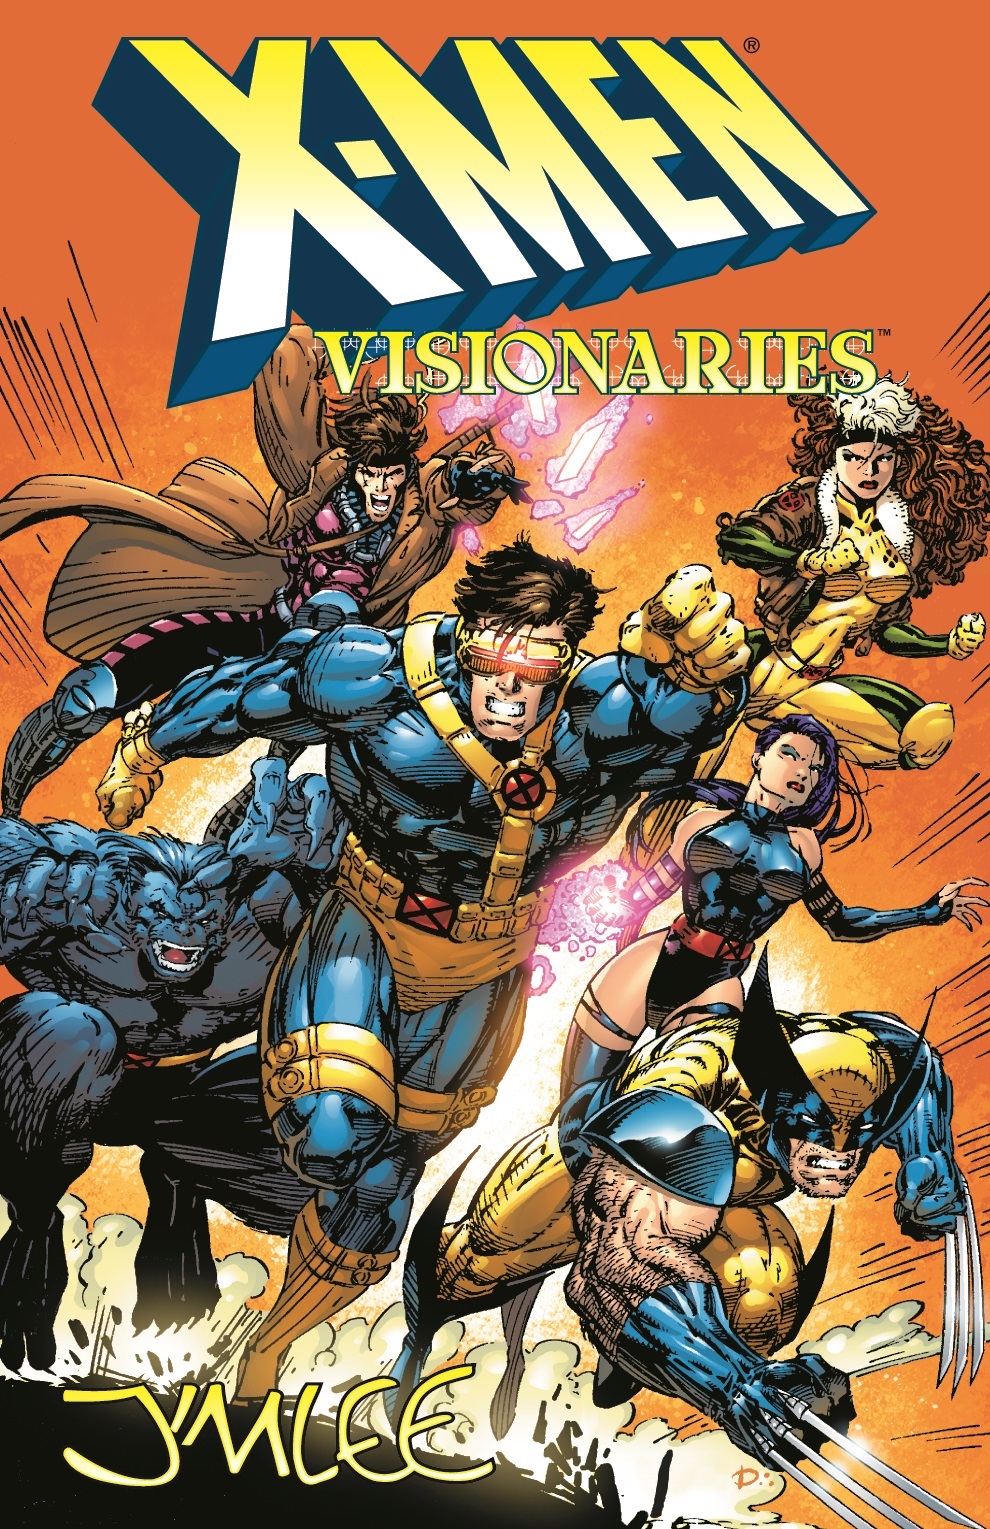 X-Men Visionaries: Jim Lee (Trade Paperback)